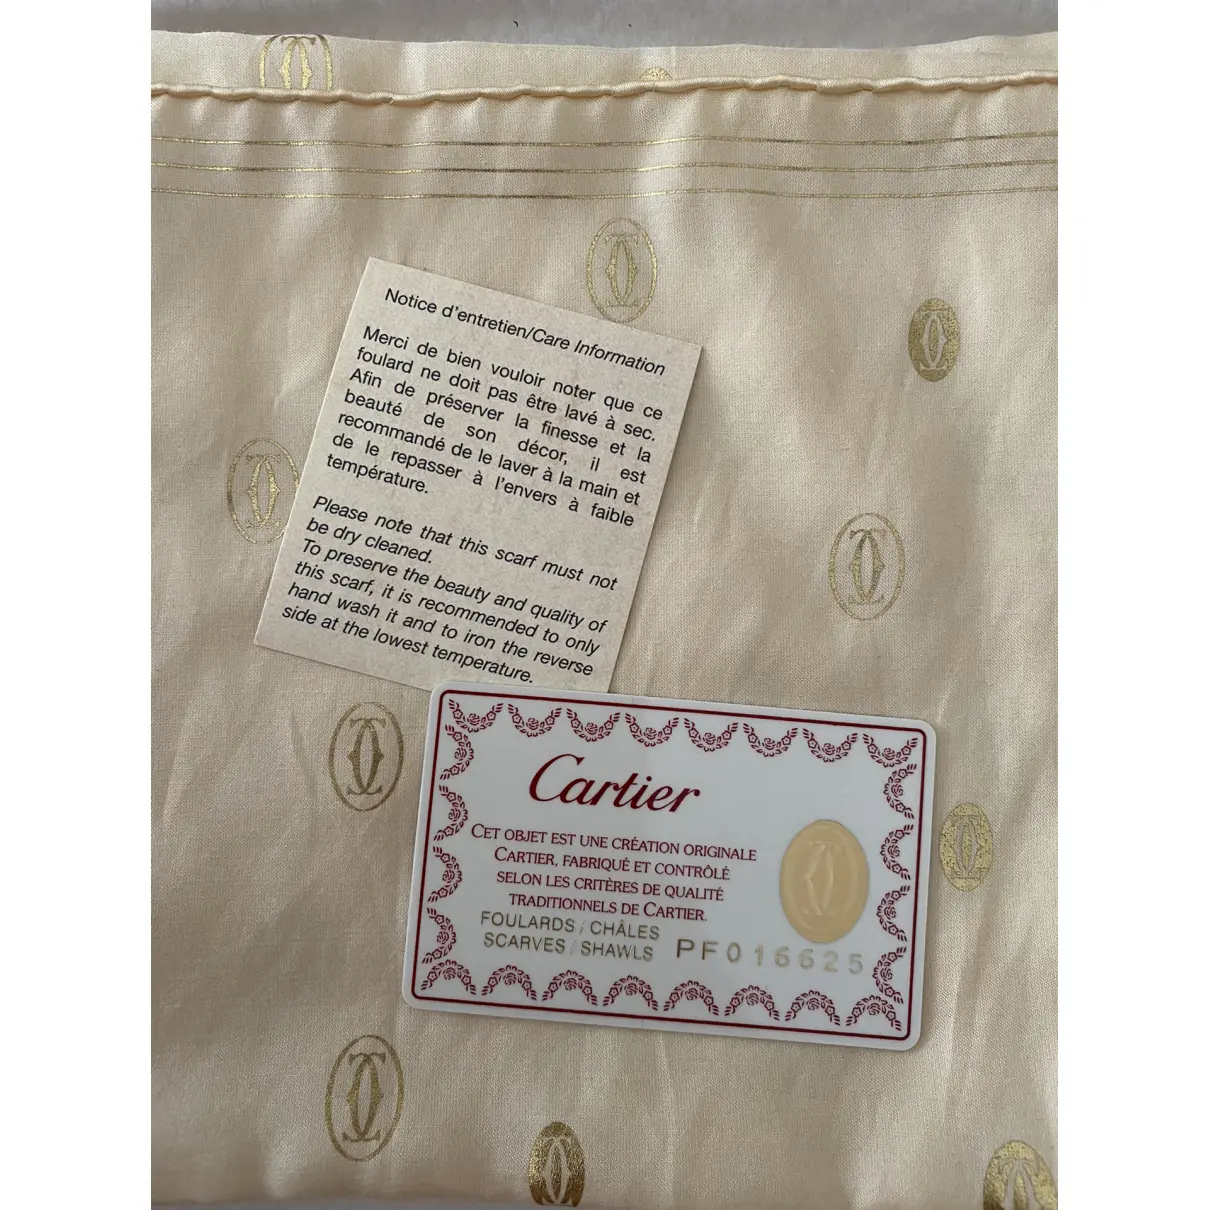 Buy Cartier Silk handkerchief online